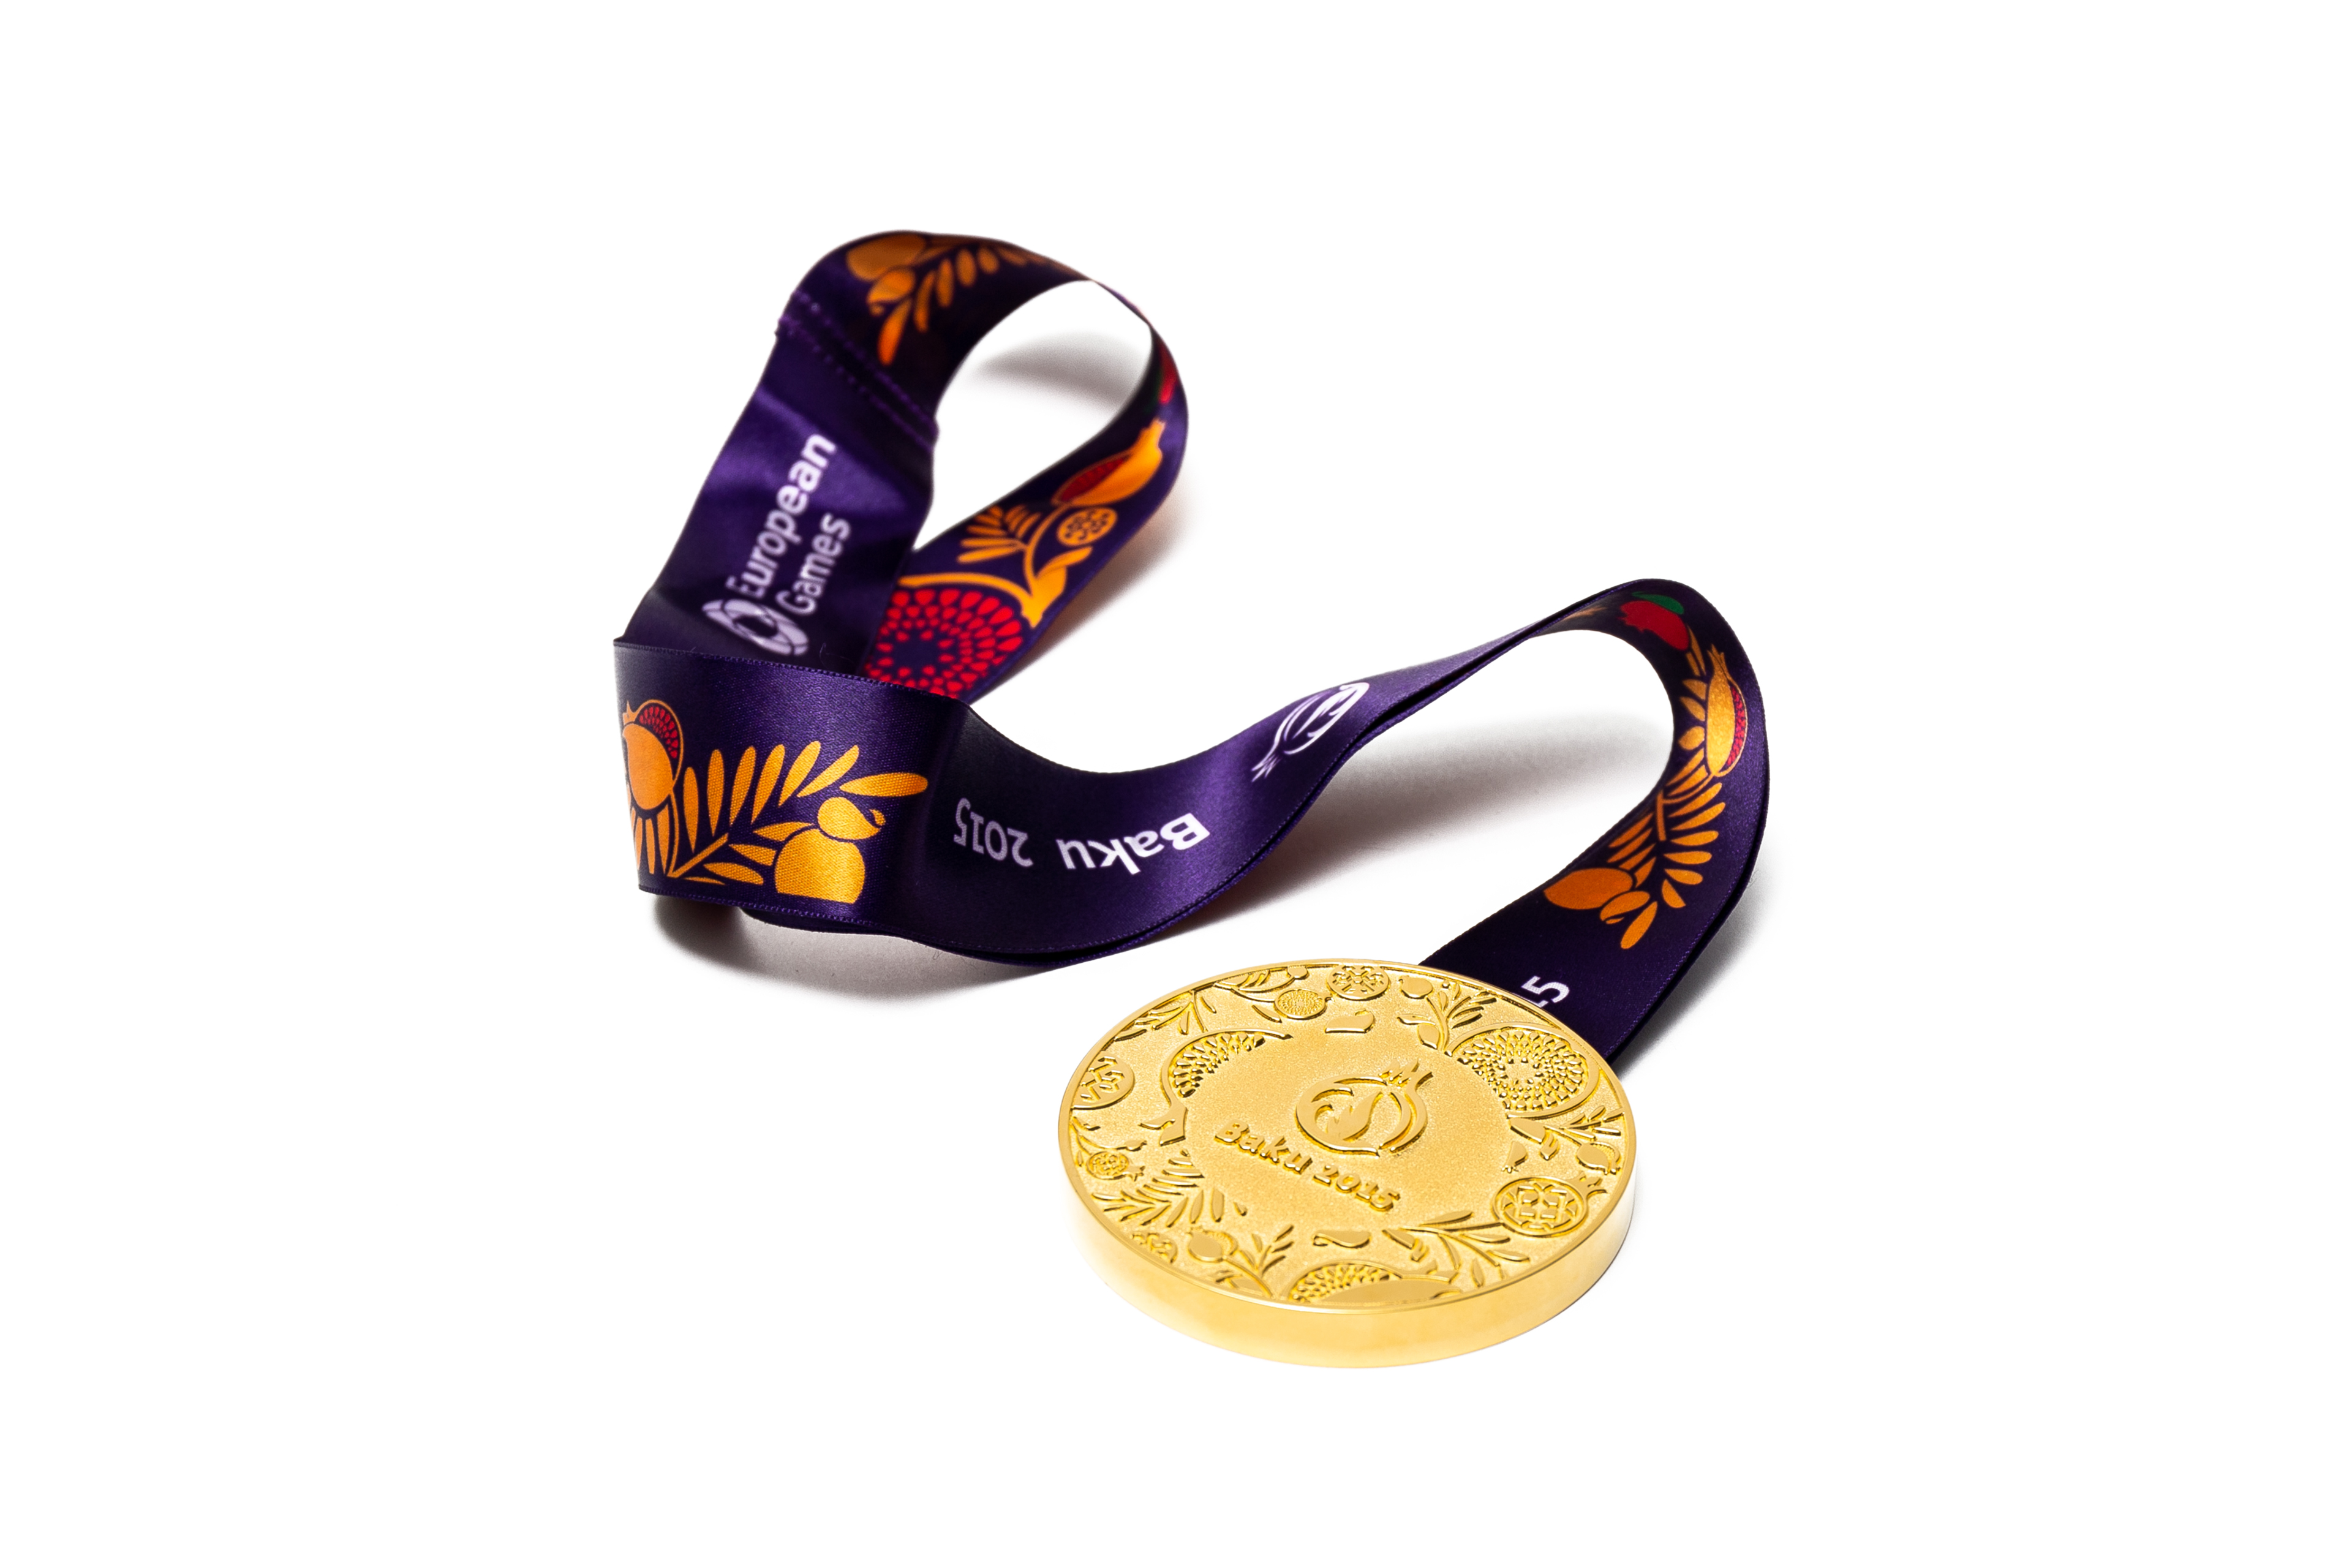 Залаты медаль I Еўрапейскіх гульняў у Баку 2015 Аляксандра Багдановіча (каноэ)